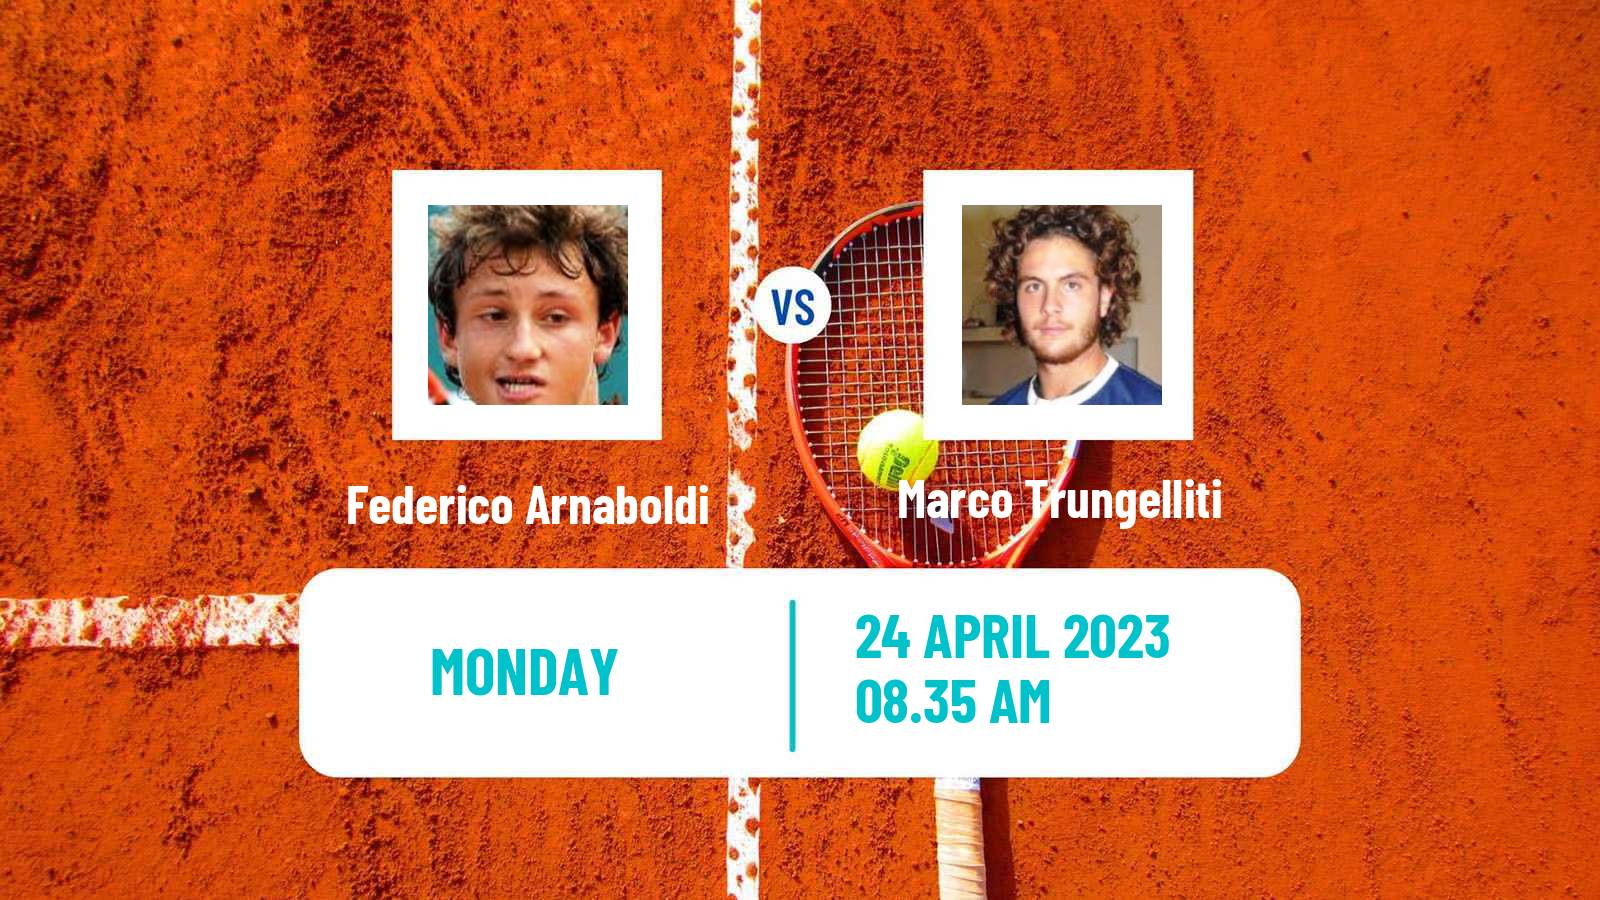 Tennis ATP Challenger Federico Arnaboldi - Marco Trungelliti